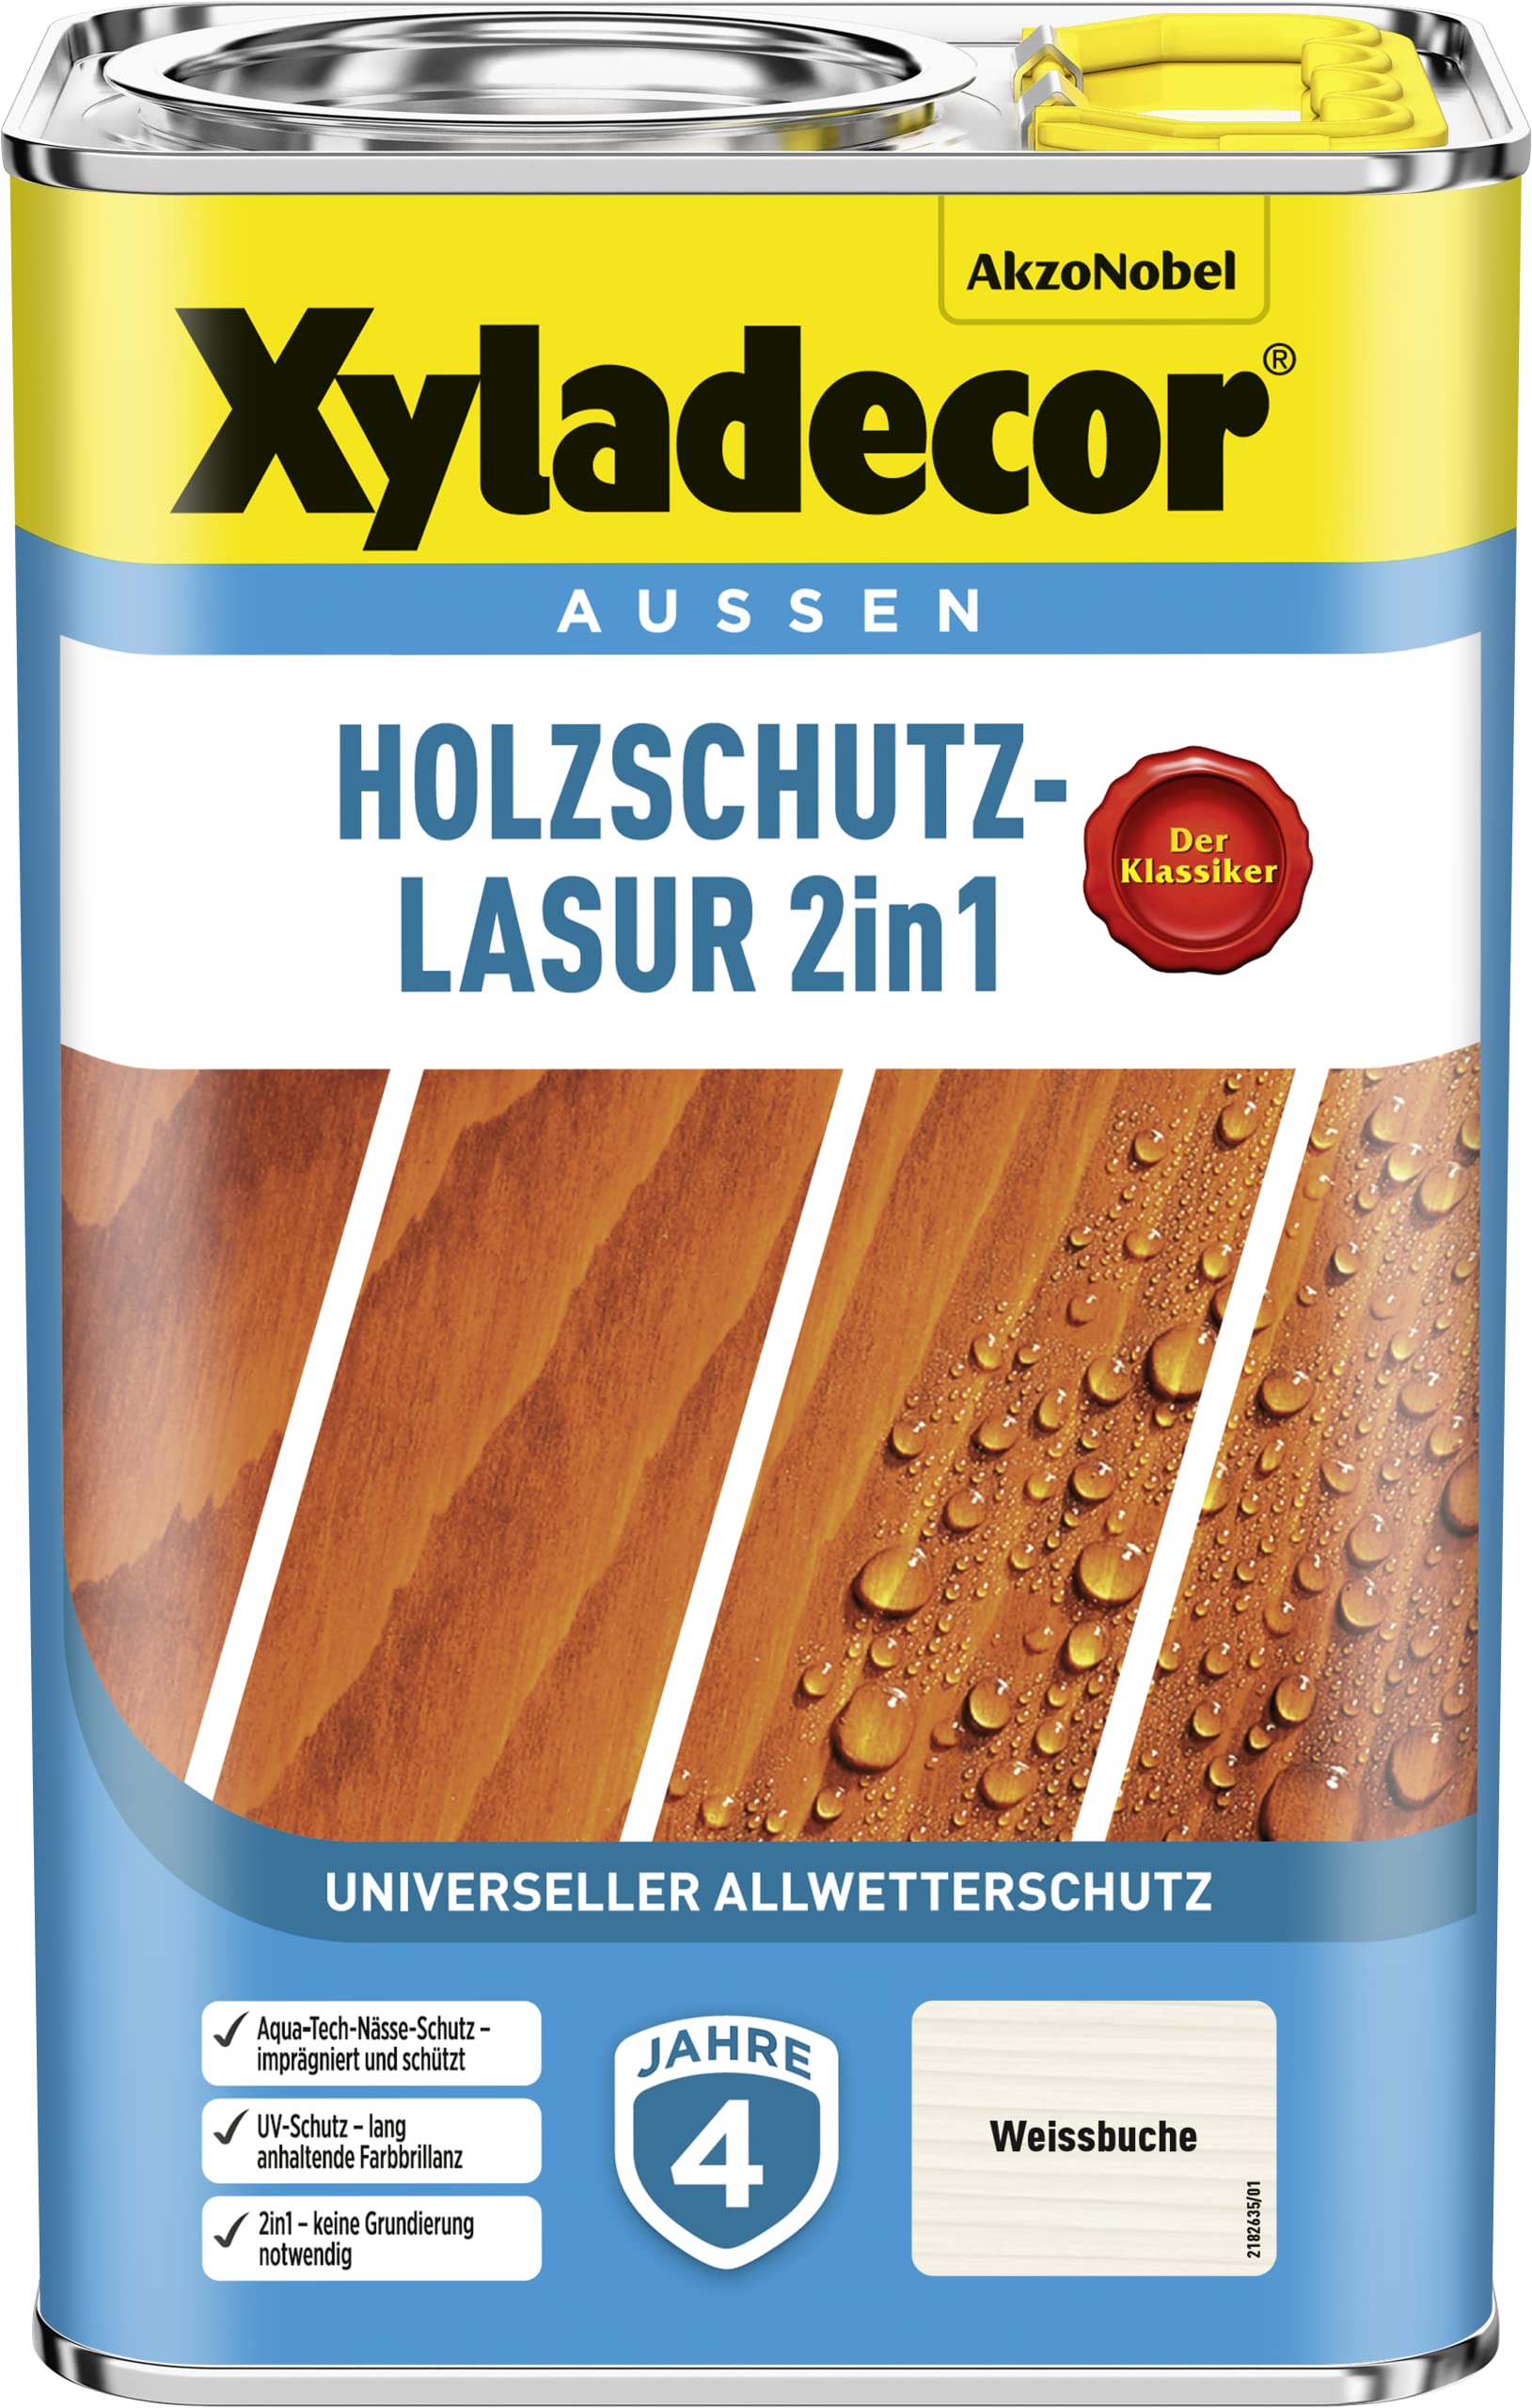 Xyladecor Holzschutz-Lasur 2 in 1, 4 Liter, Weissbuche